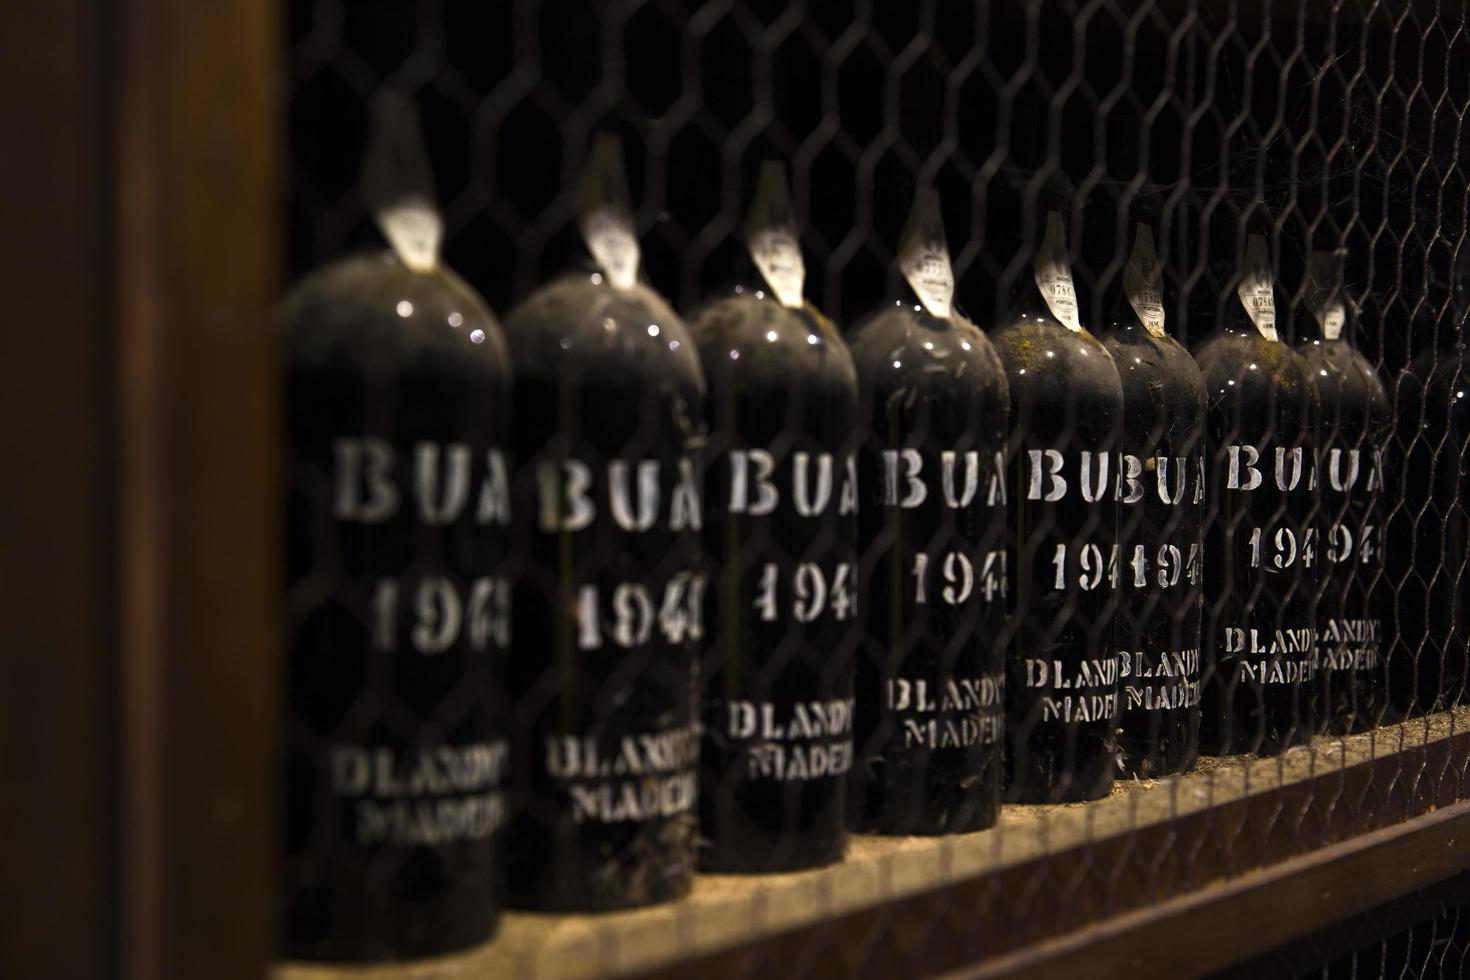 madeira, portugal, 2020 - detalle del almacenamiento de vino de madeira vintage de blandy en portugal. es una empresa familiar de vinos fundada por john blandy en 1811. foto